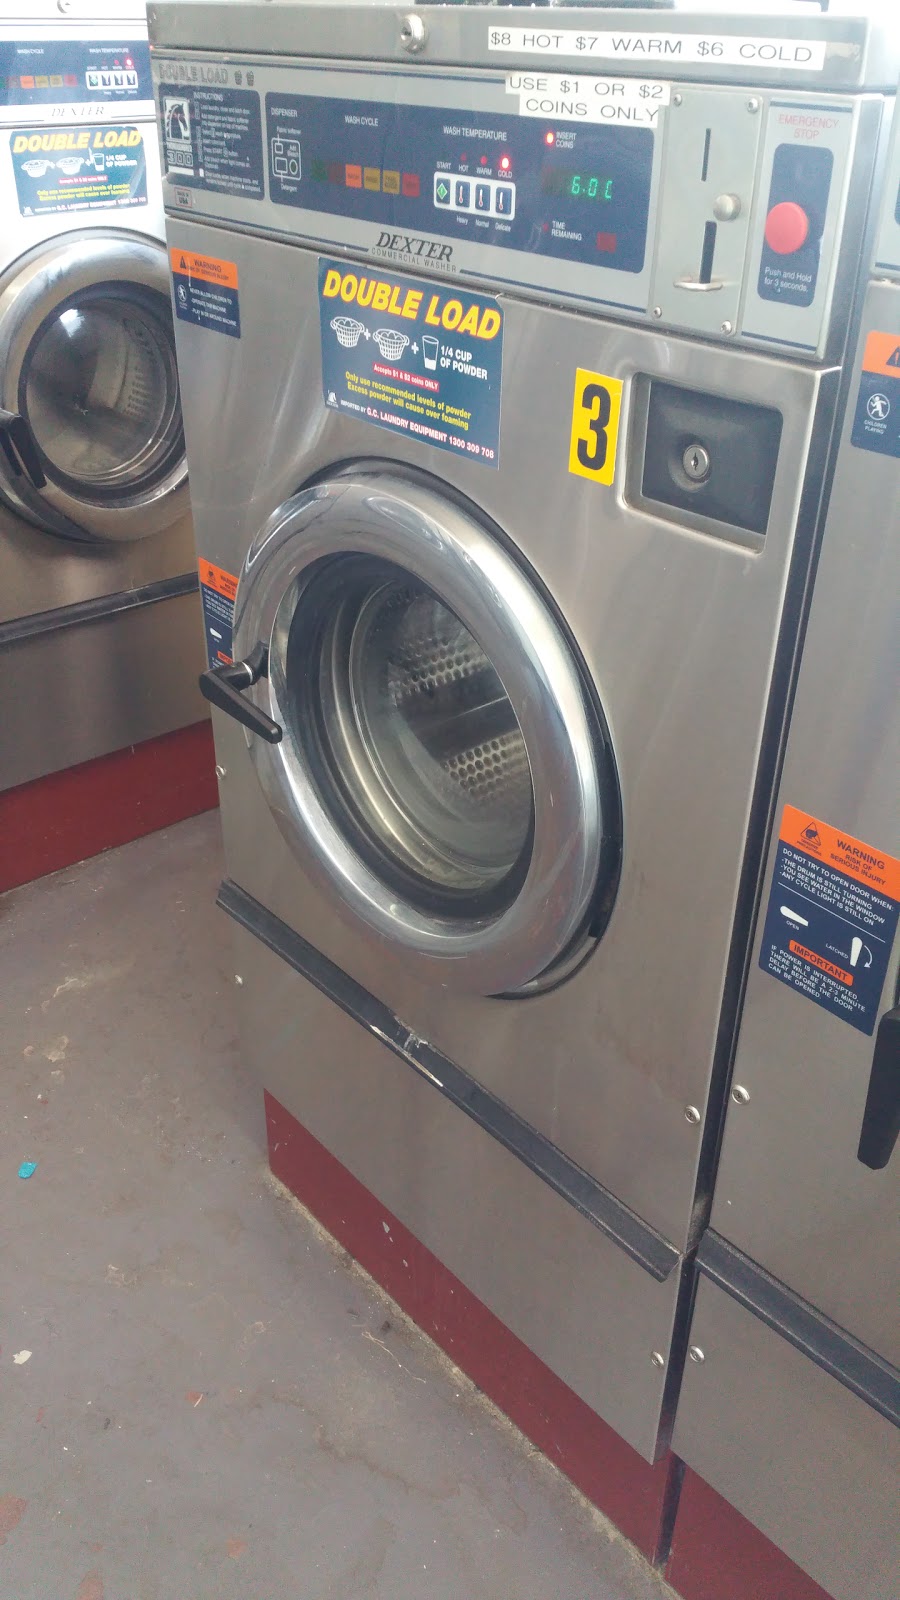 Parap Express Laundromat | laundry | United Fuel Shopping Complex, 1/209 Stuart Hwy, Parap NT 0820, Australia | 0889413511 OR +61 8 8941 3511